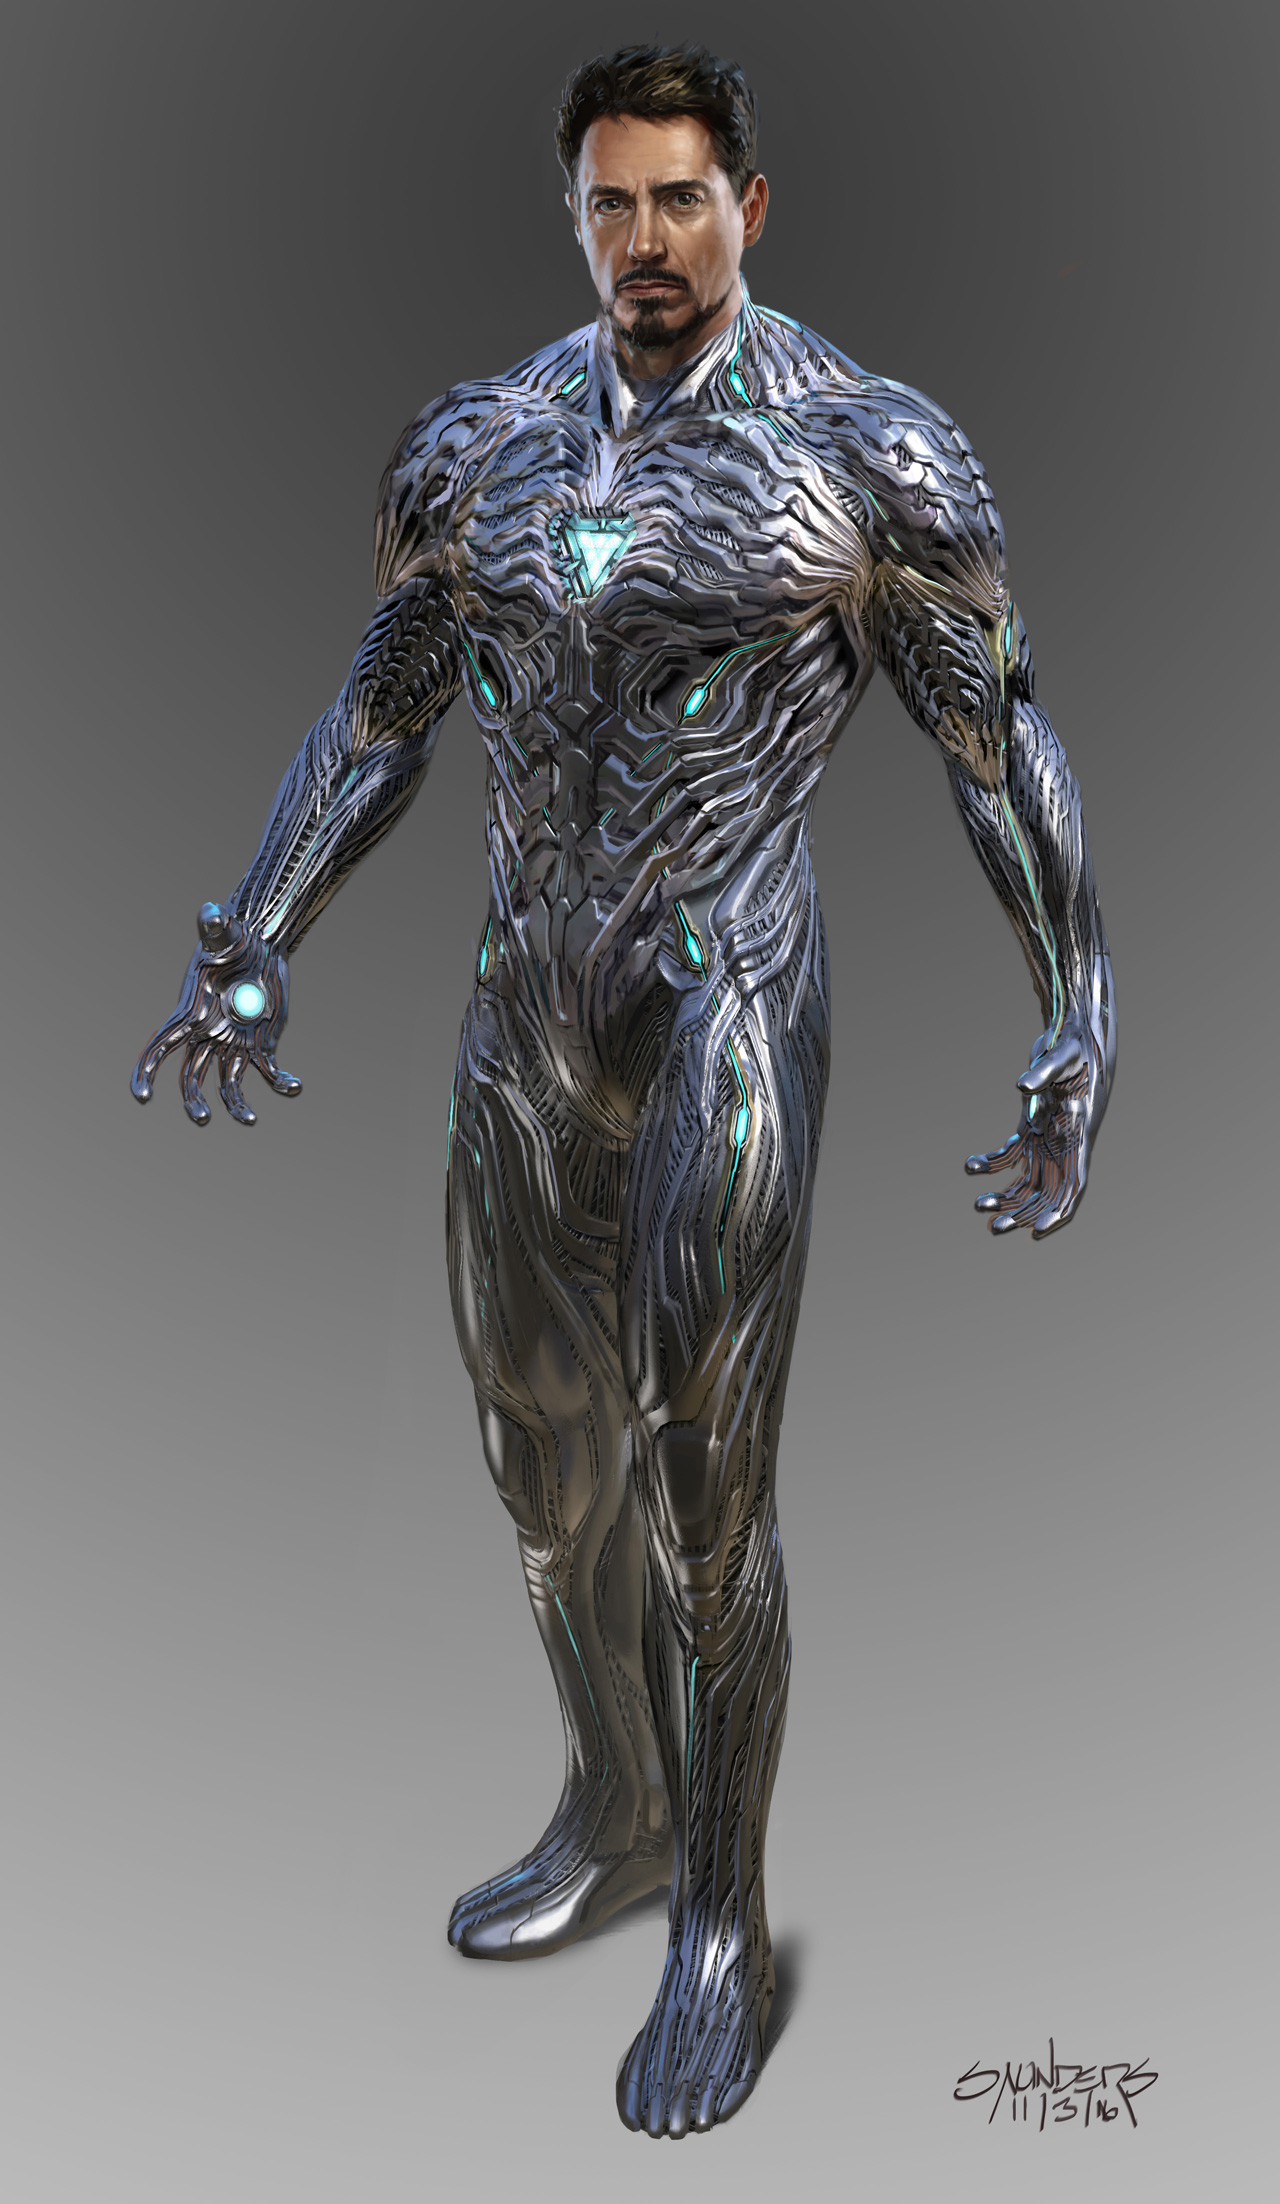 iron man armor 50